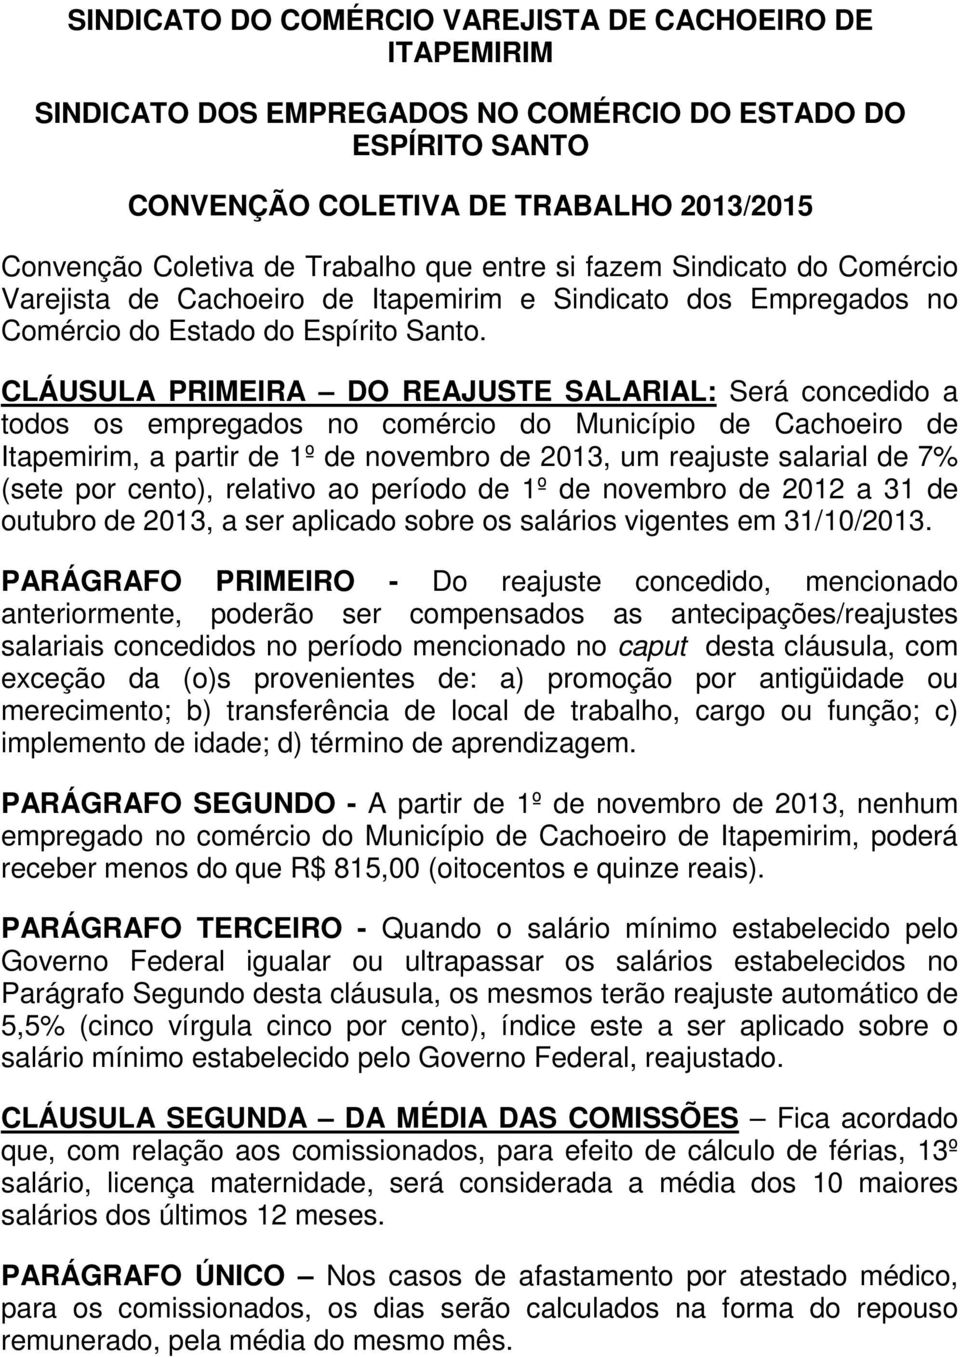 CLÁUSULA PRIMEIRA DO REAJUSTE SALARIAL: Será concedido a todos os empregados no comércio do Município de Cachoeiro de Itapemirim, a partir de 1º de novembro de 2013, um reajuste salarial de 7% (sete